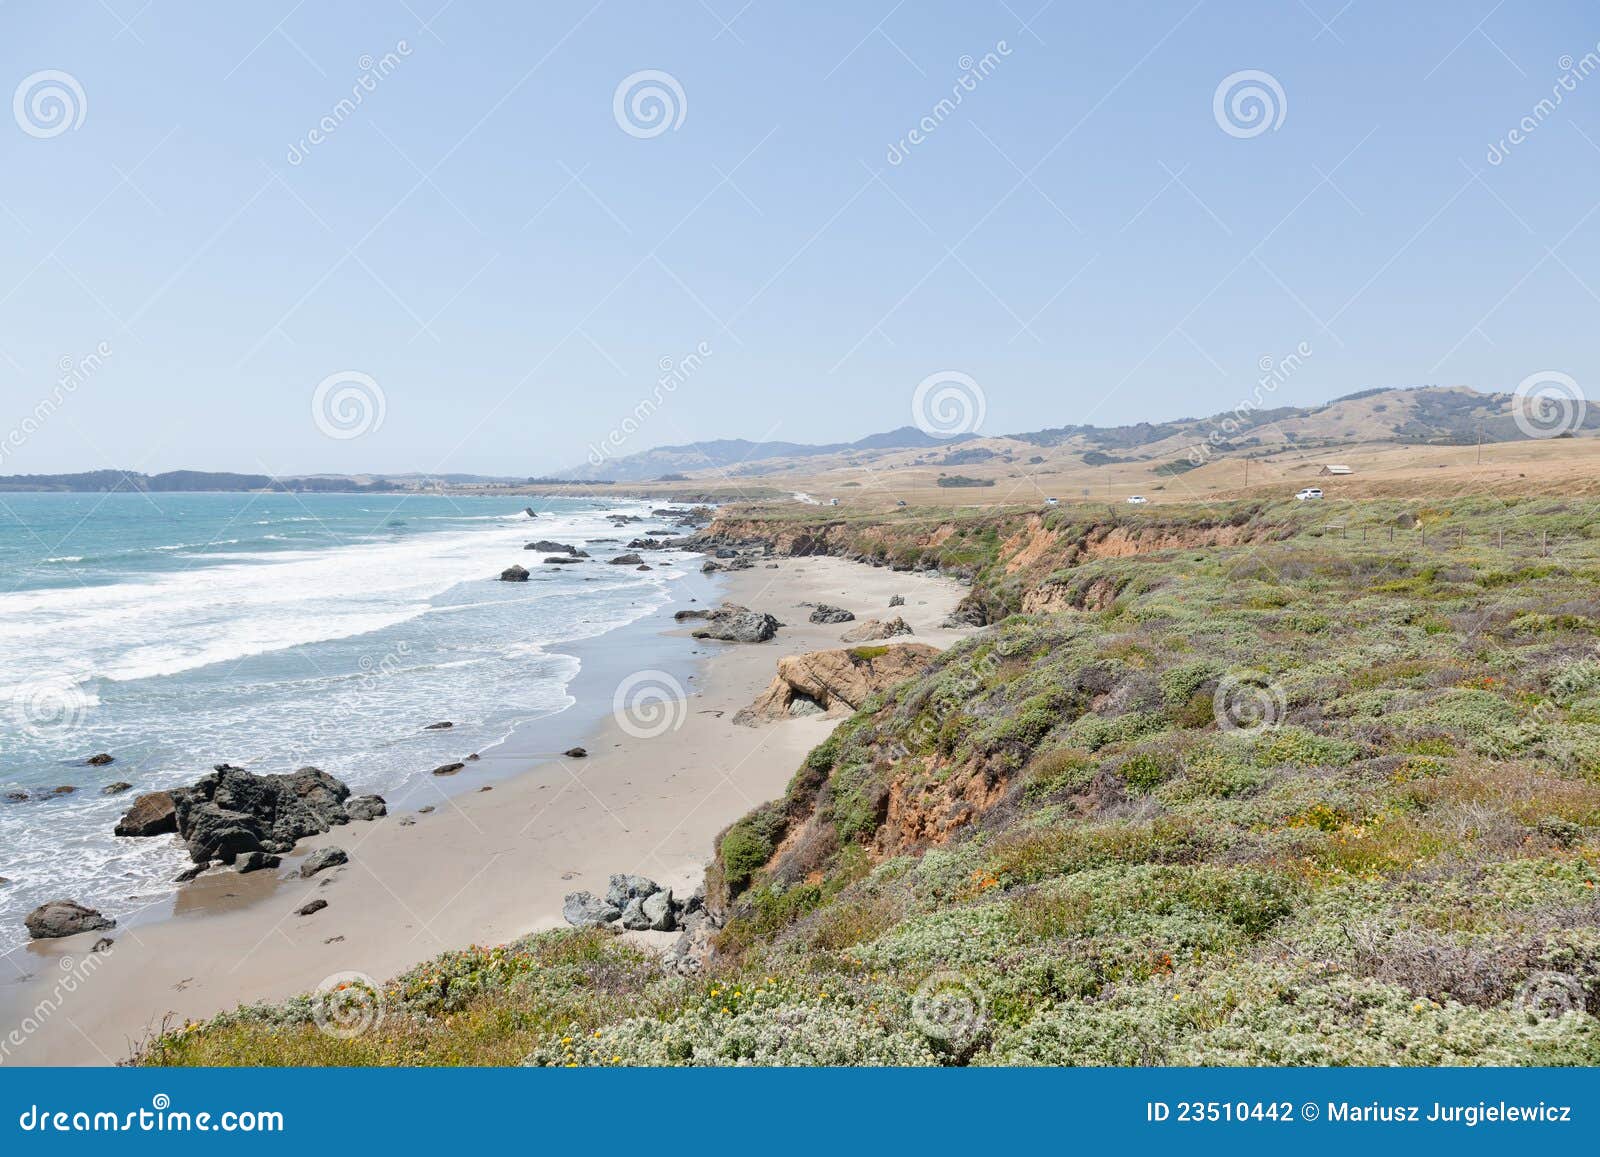 加利福尼亚cetral海岸. 大致跨过状态的区海湾加利福尼亚中央海岸构想蒙特里点团结了